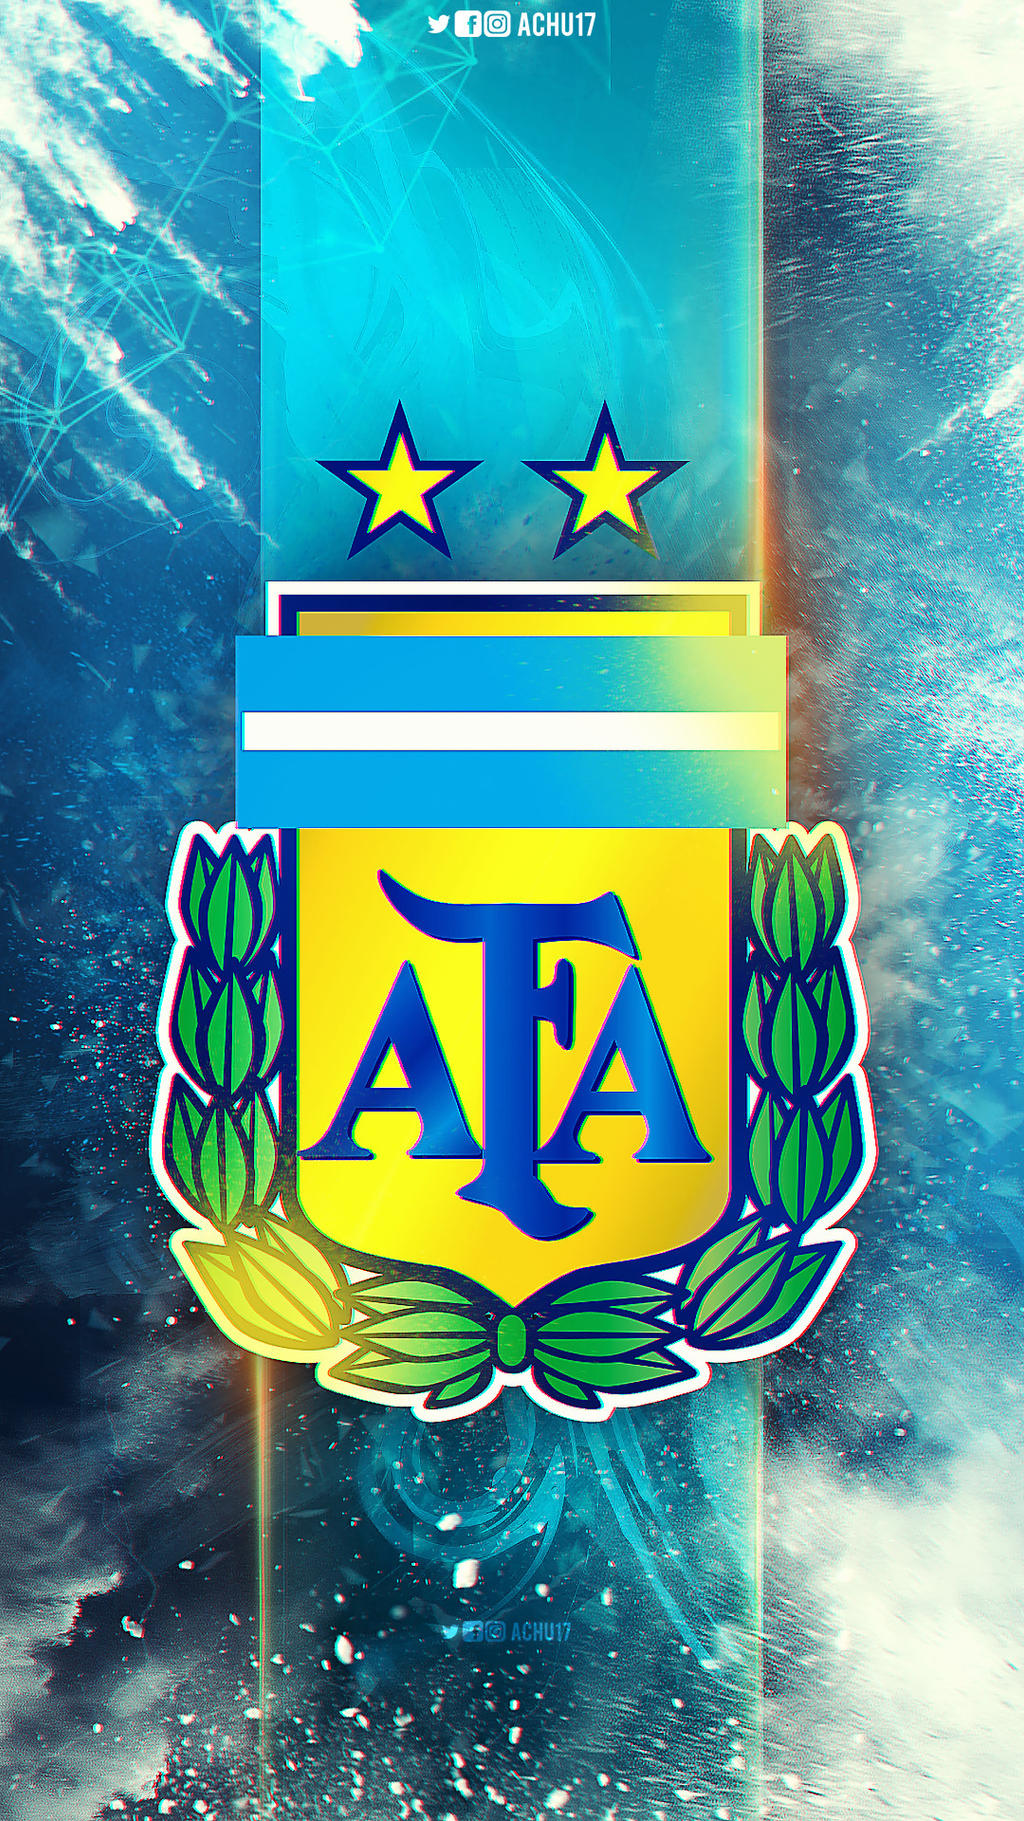 Argentina - Logo by Achu17 on DeviantArt